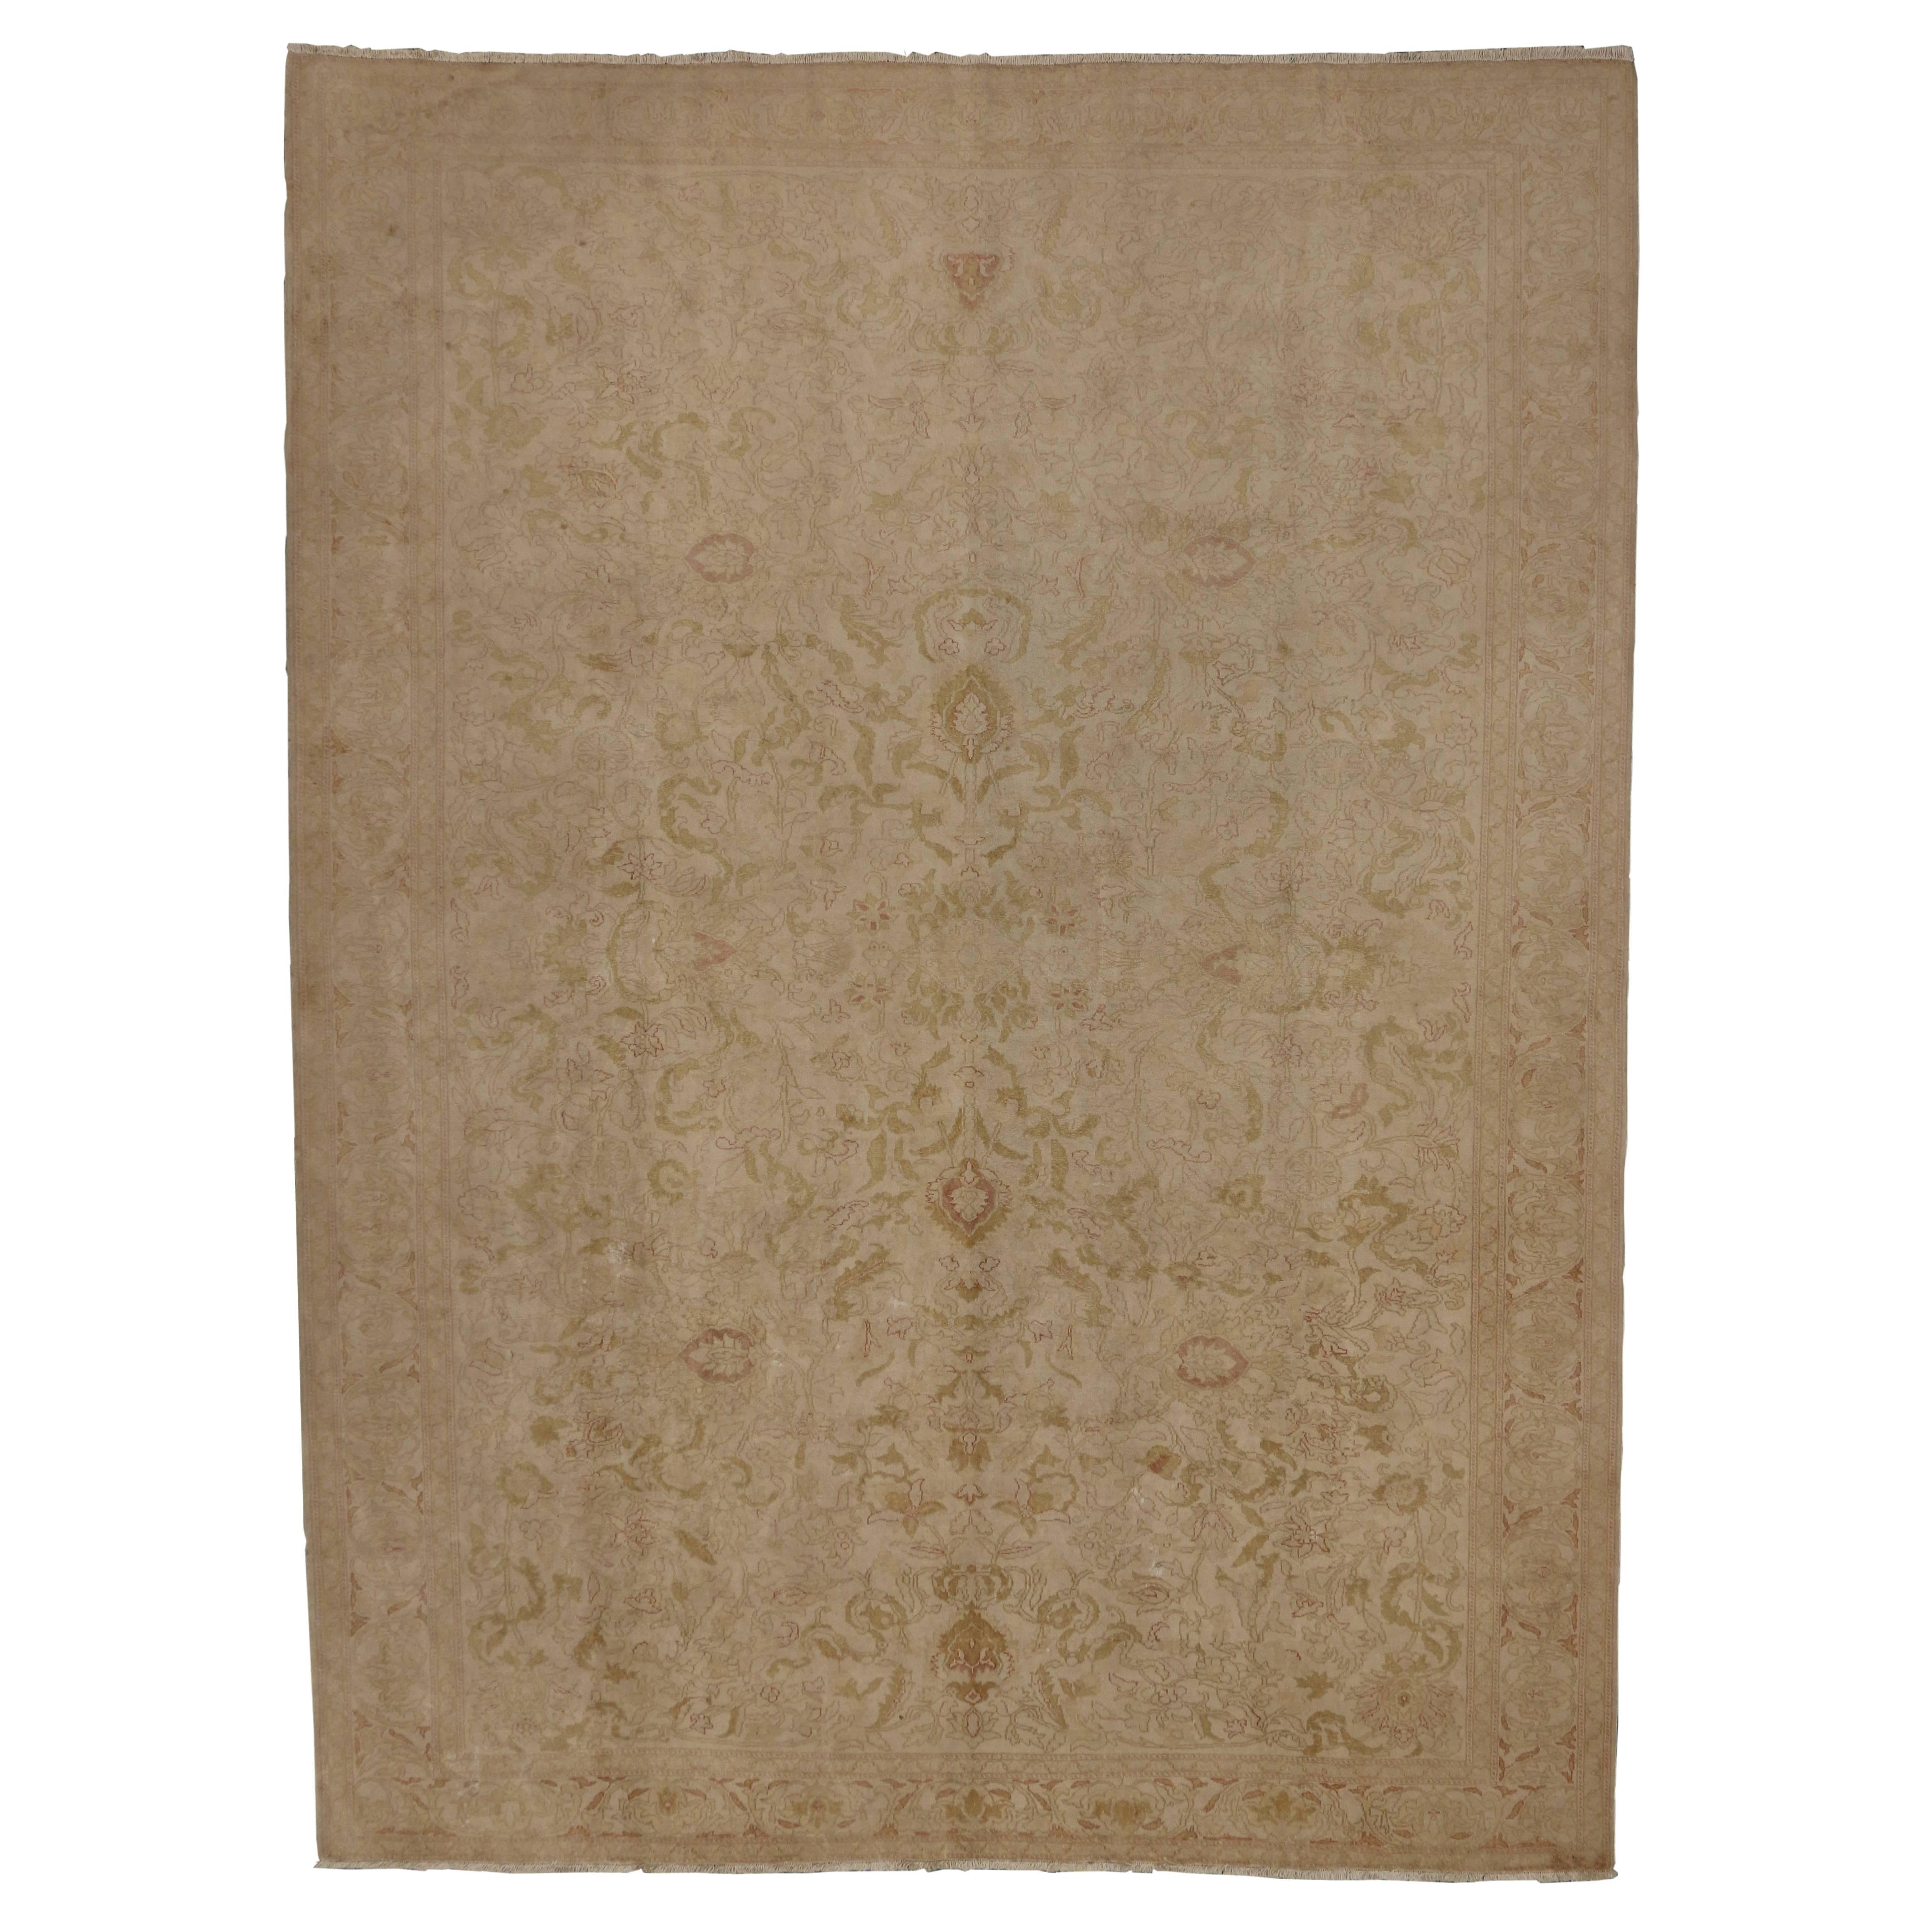 71910 Antiker türkischer Oushak-Teppich mit minimalistischem Stil in weichen, gedeckten Farben 09'02 X 12'07.​​ Bei diesem handgeknüpften antiken türkischen Oushak-Teppich aus Baumwolle trifft eine weiche, maßgeschneiderte Ausstrahlung auf alte